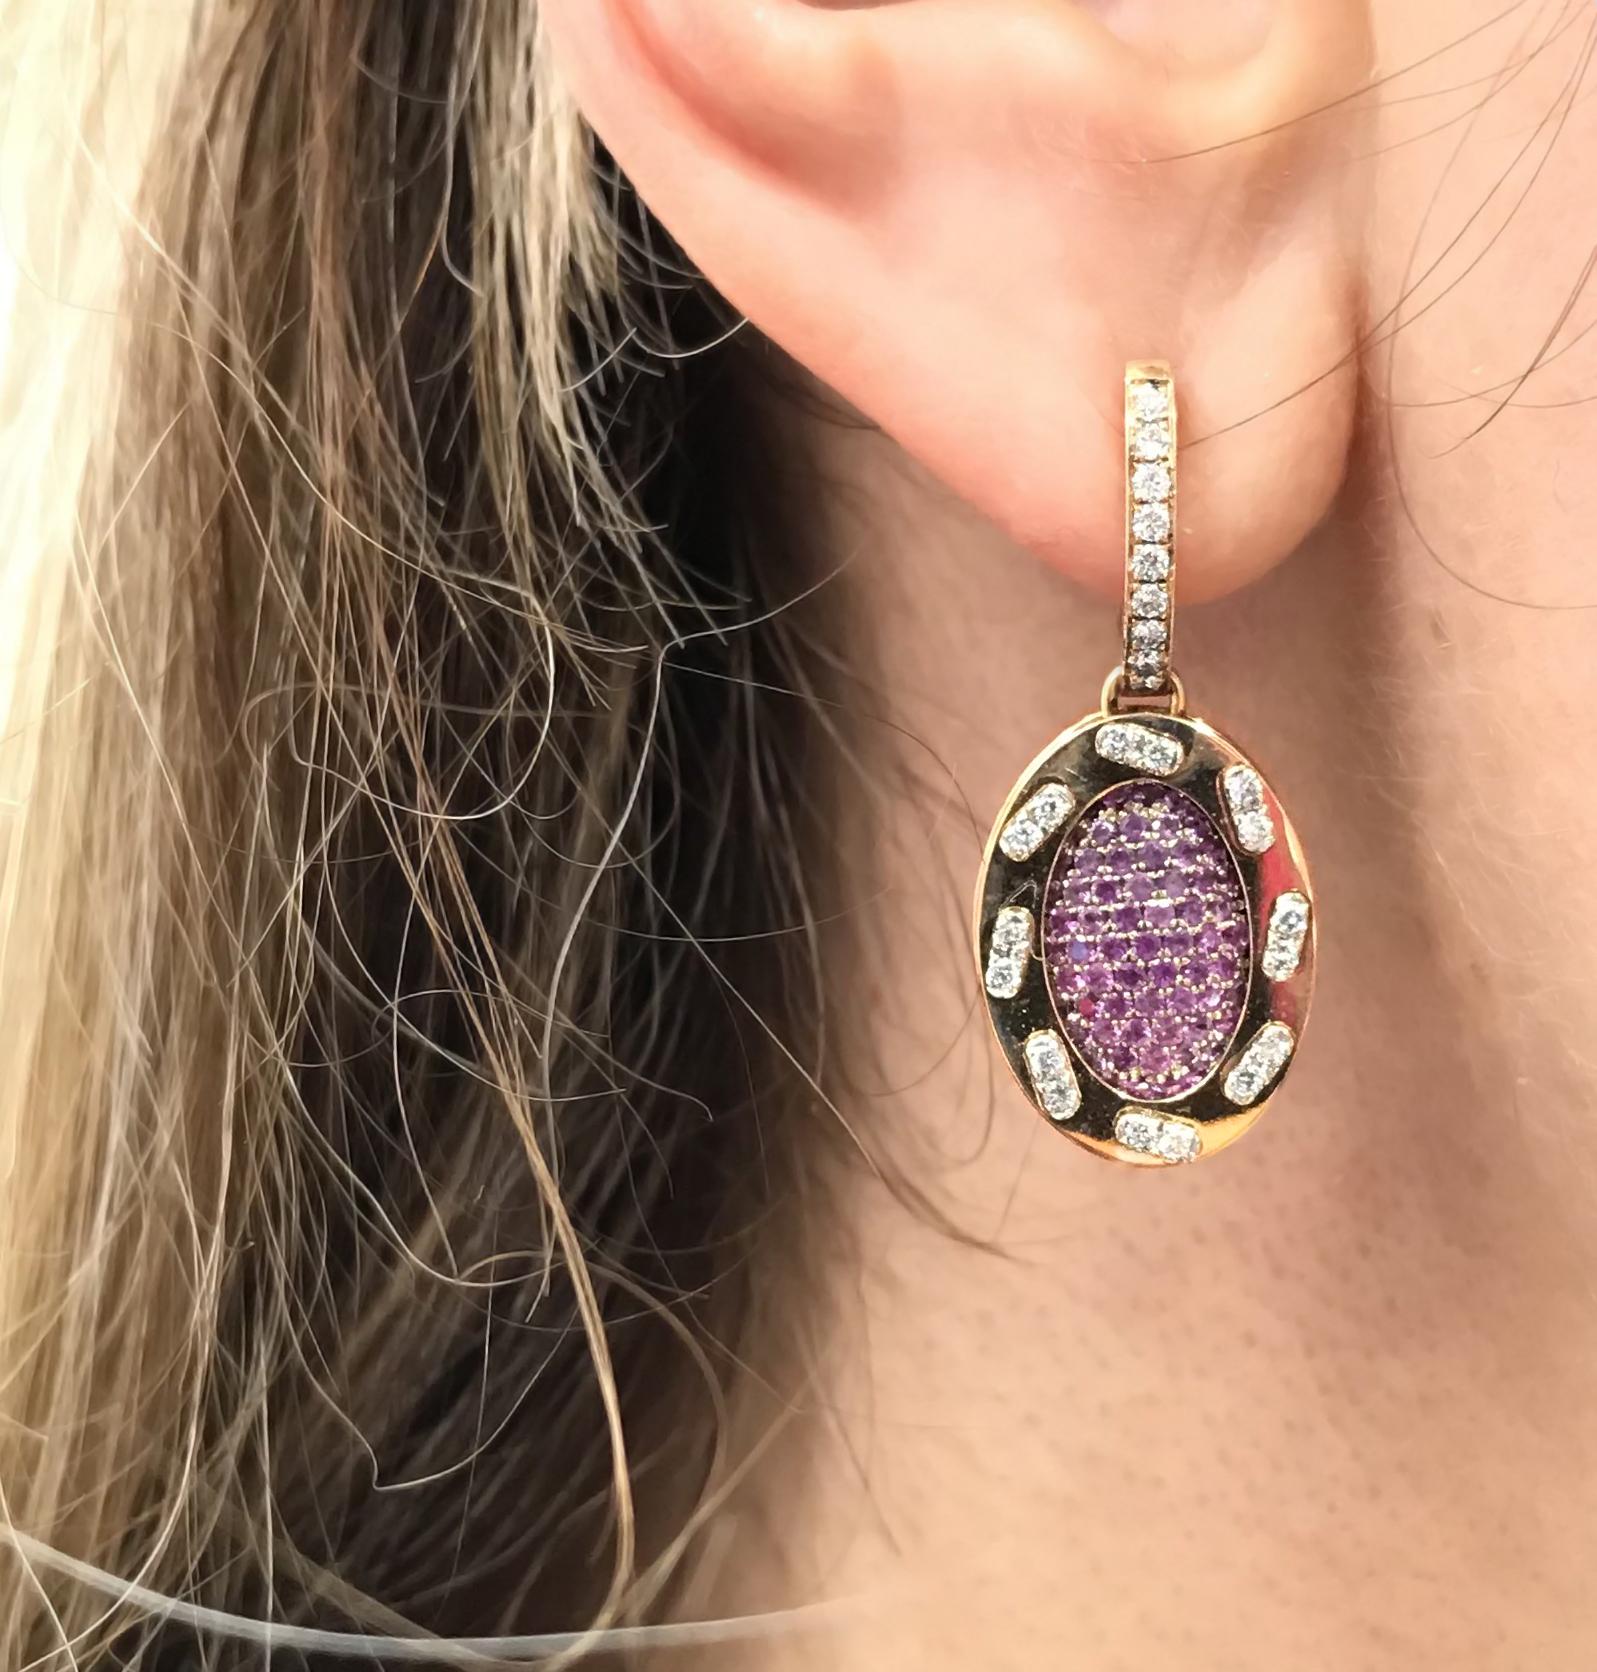 Ohrringe aus 18 Karat Gold, rosa Saphiren und Diamanten aus der Kollektion Iconic Omles.
Eine Geschichte hinter dieser Sammlung von Angeletti,  der goldene Rahmen beherbergt eine Reihe von Diamanten (n.50 Steine ct. 0.41), die in einem Muster aus